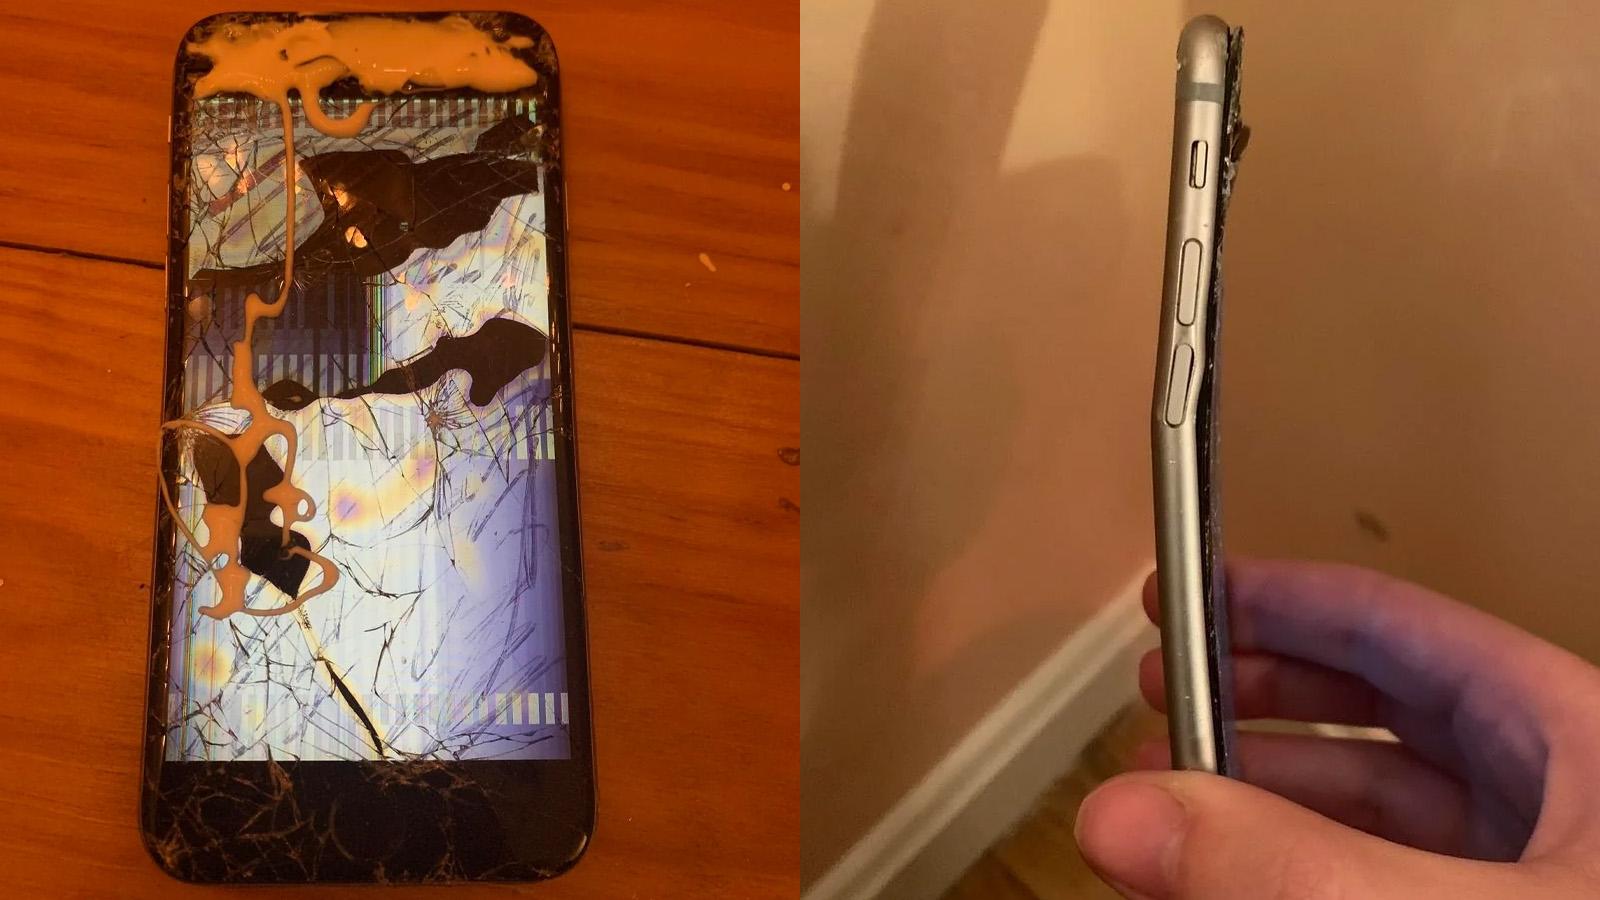 iPhone 6 smashed